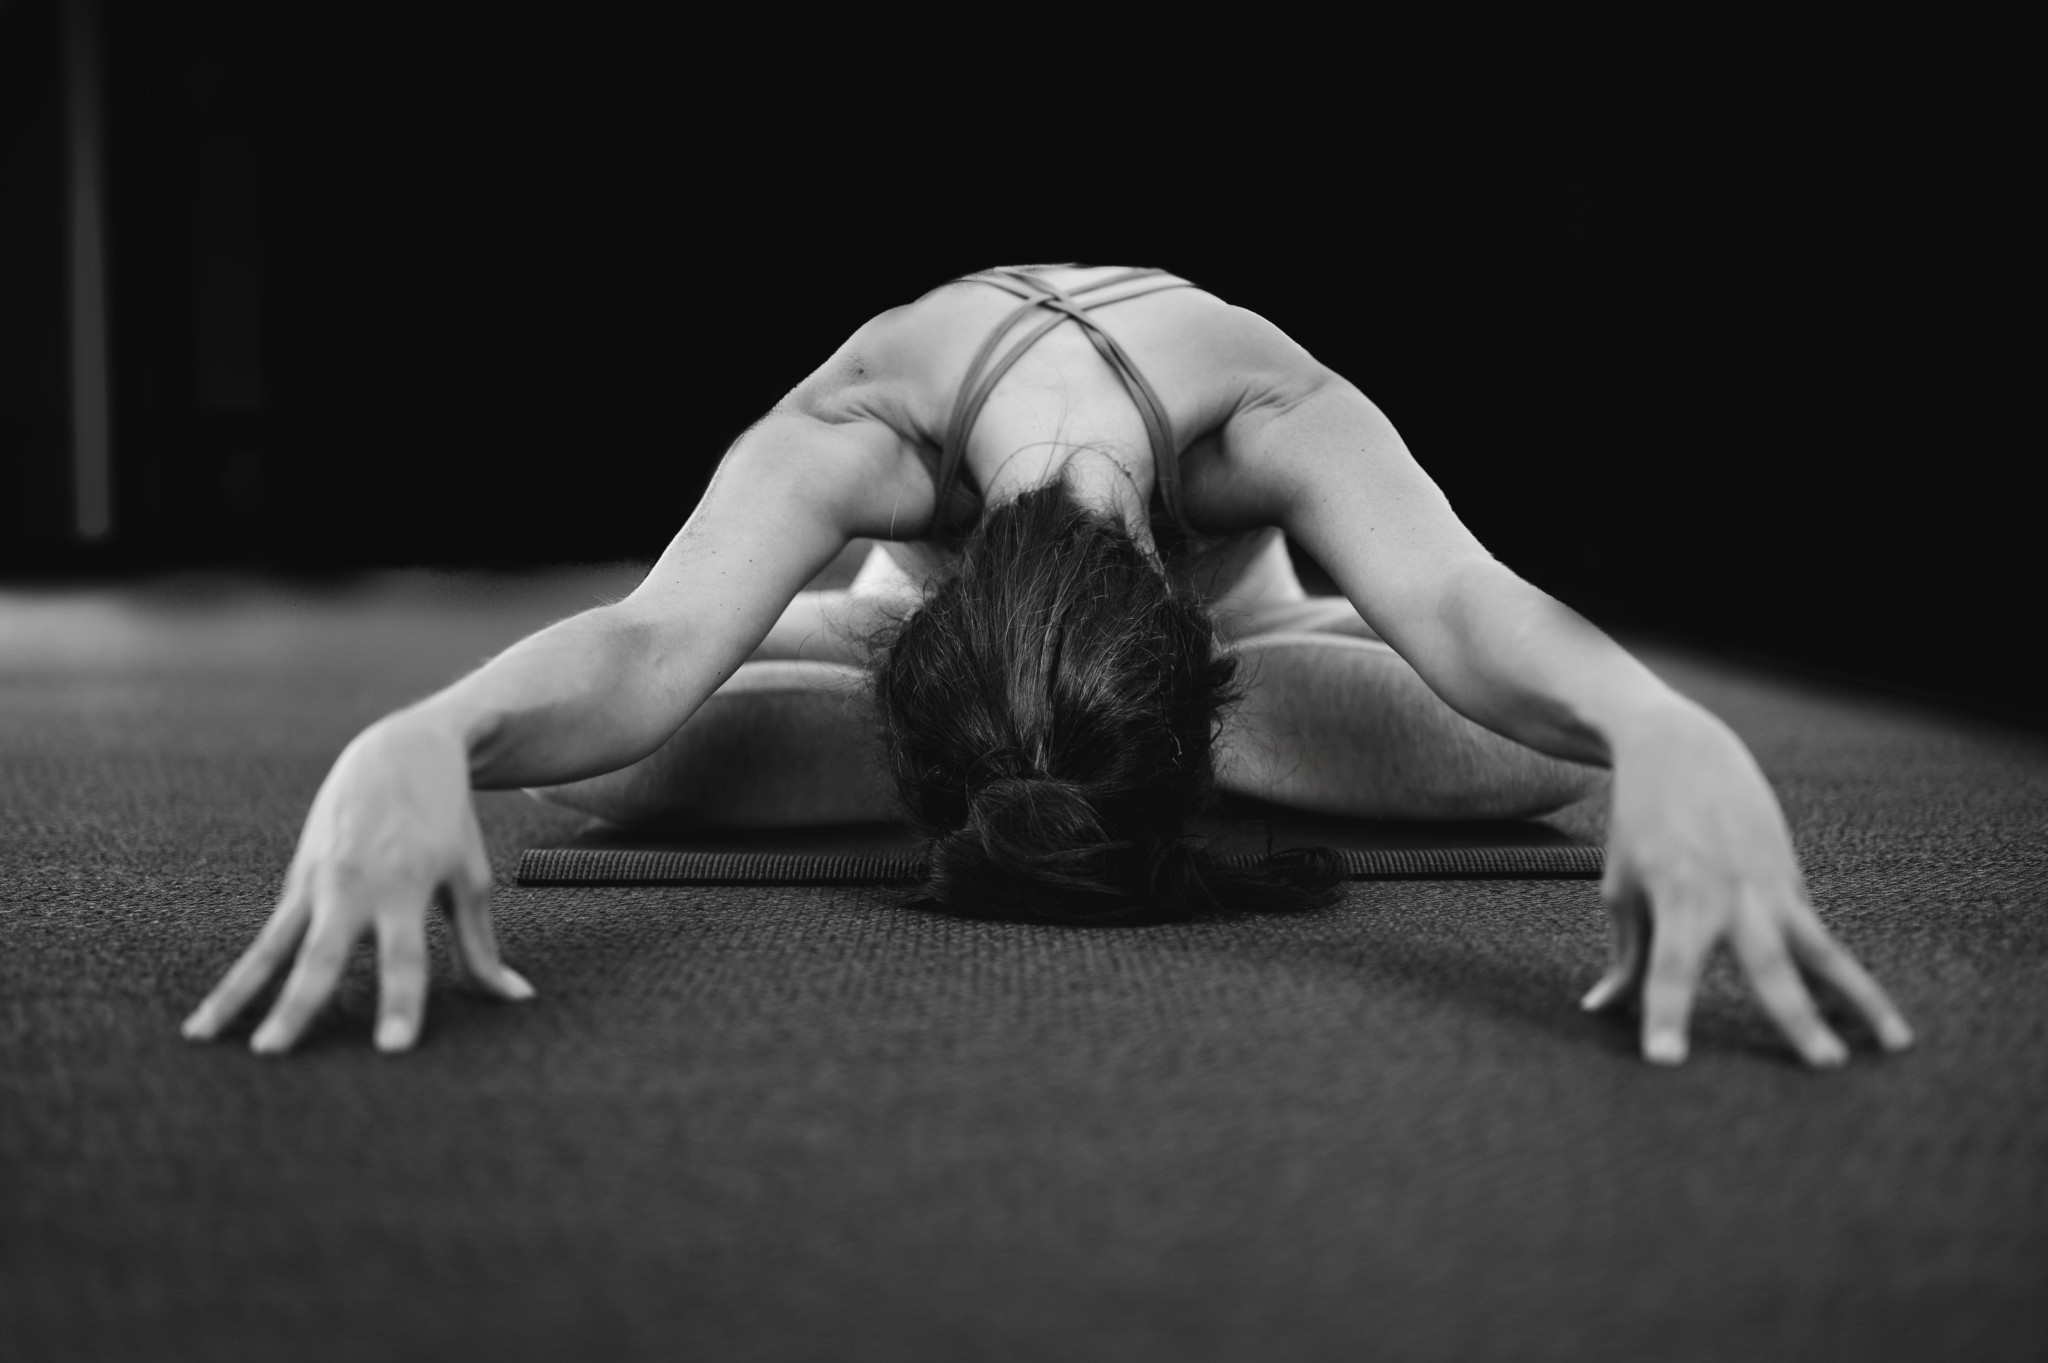 Kάτι τρέχει με τη Yoga, που αποκτά φανατικό κοινό τώρα και σε άνδρες. Διαλογισμός, γυμναστική ή και τα δύο;